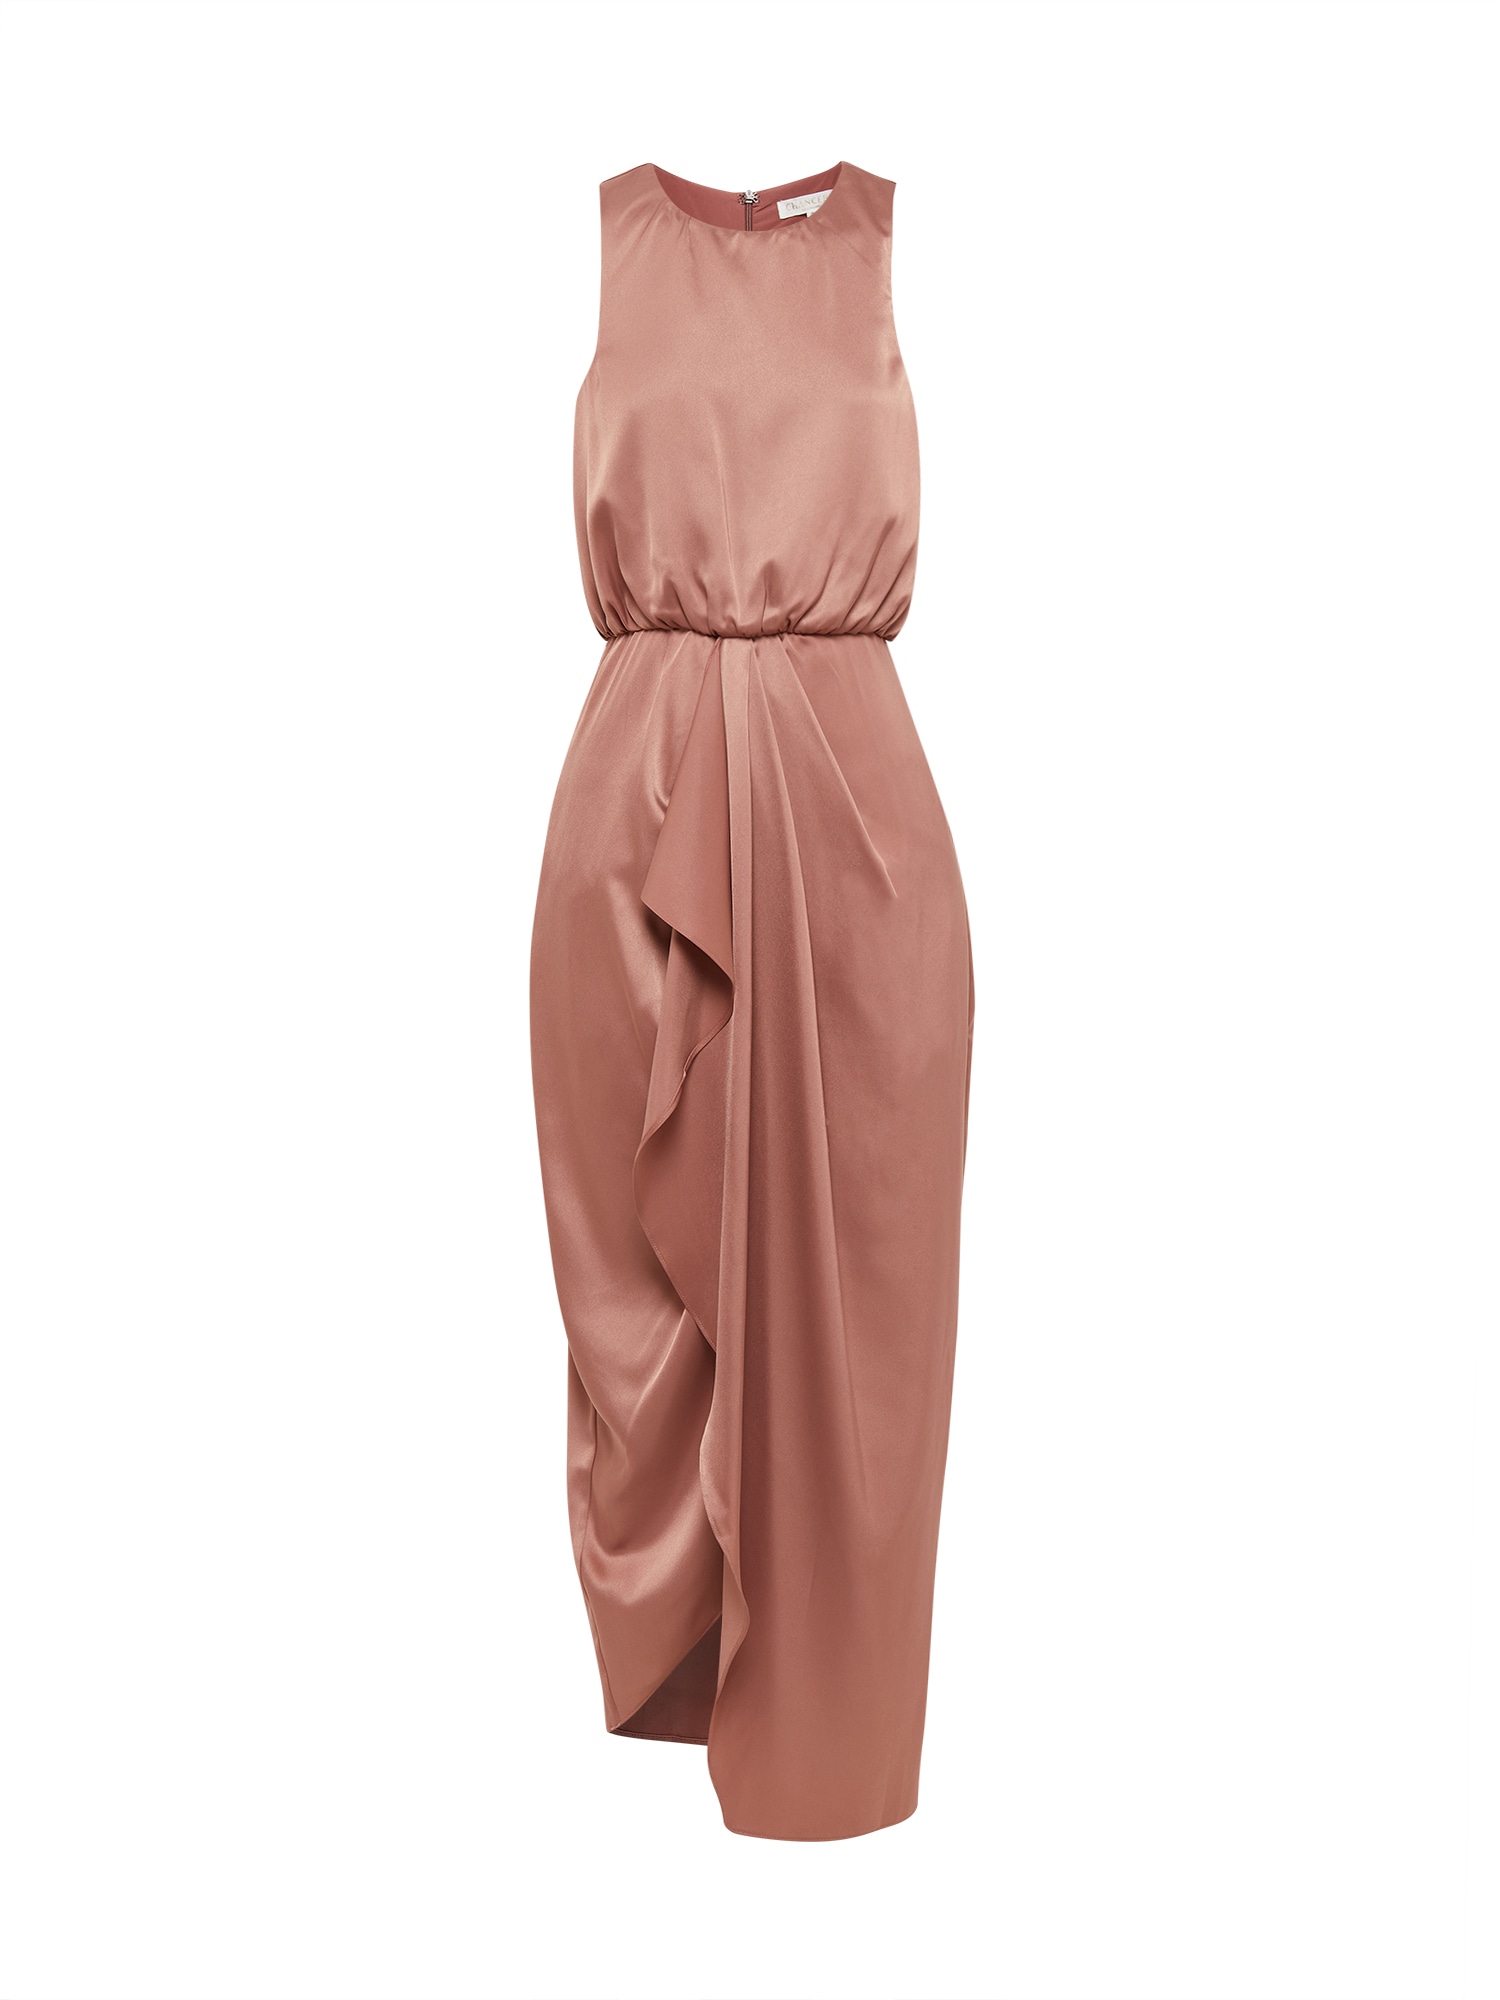 Chancery Kokteilinė suknelė ryškiai rožinė spalva